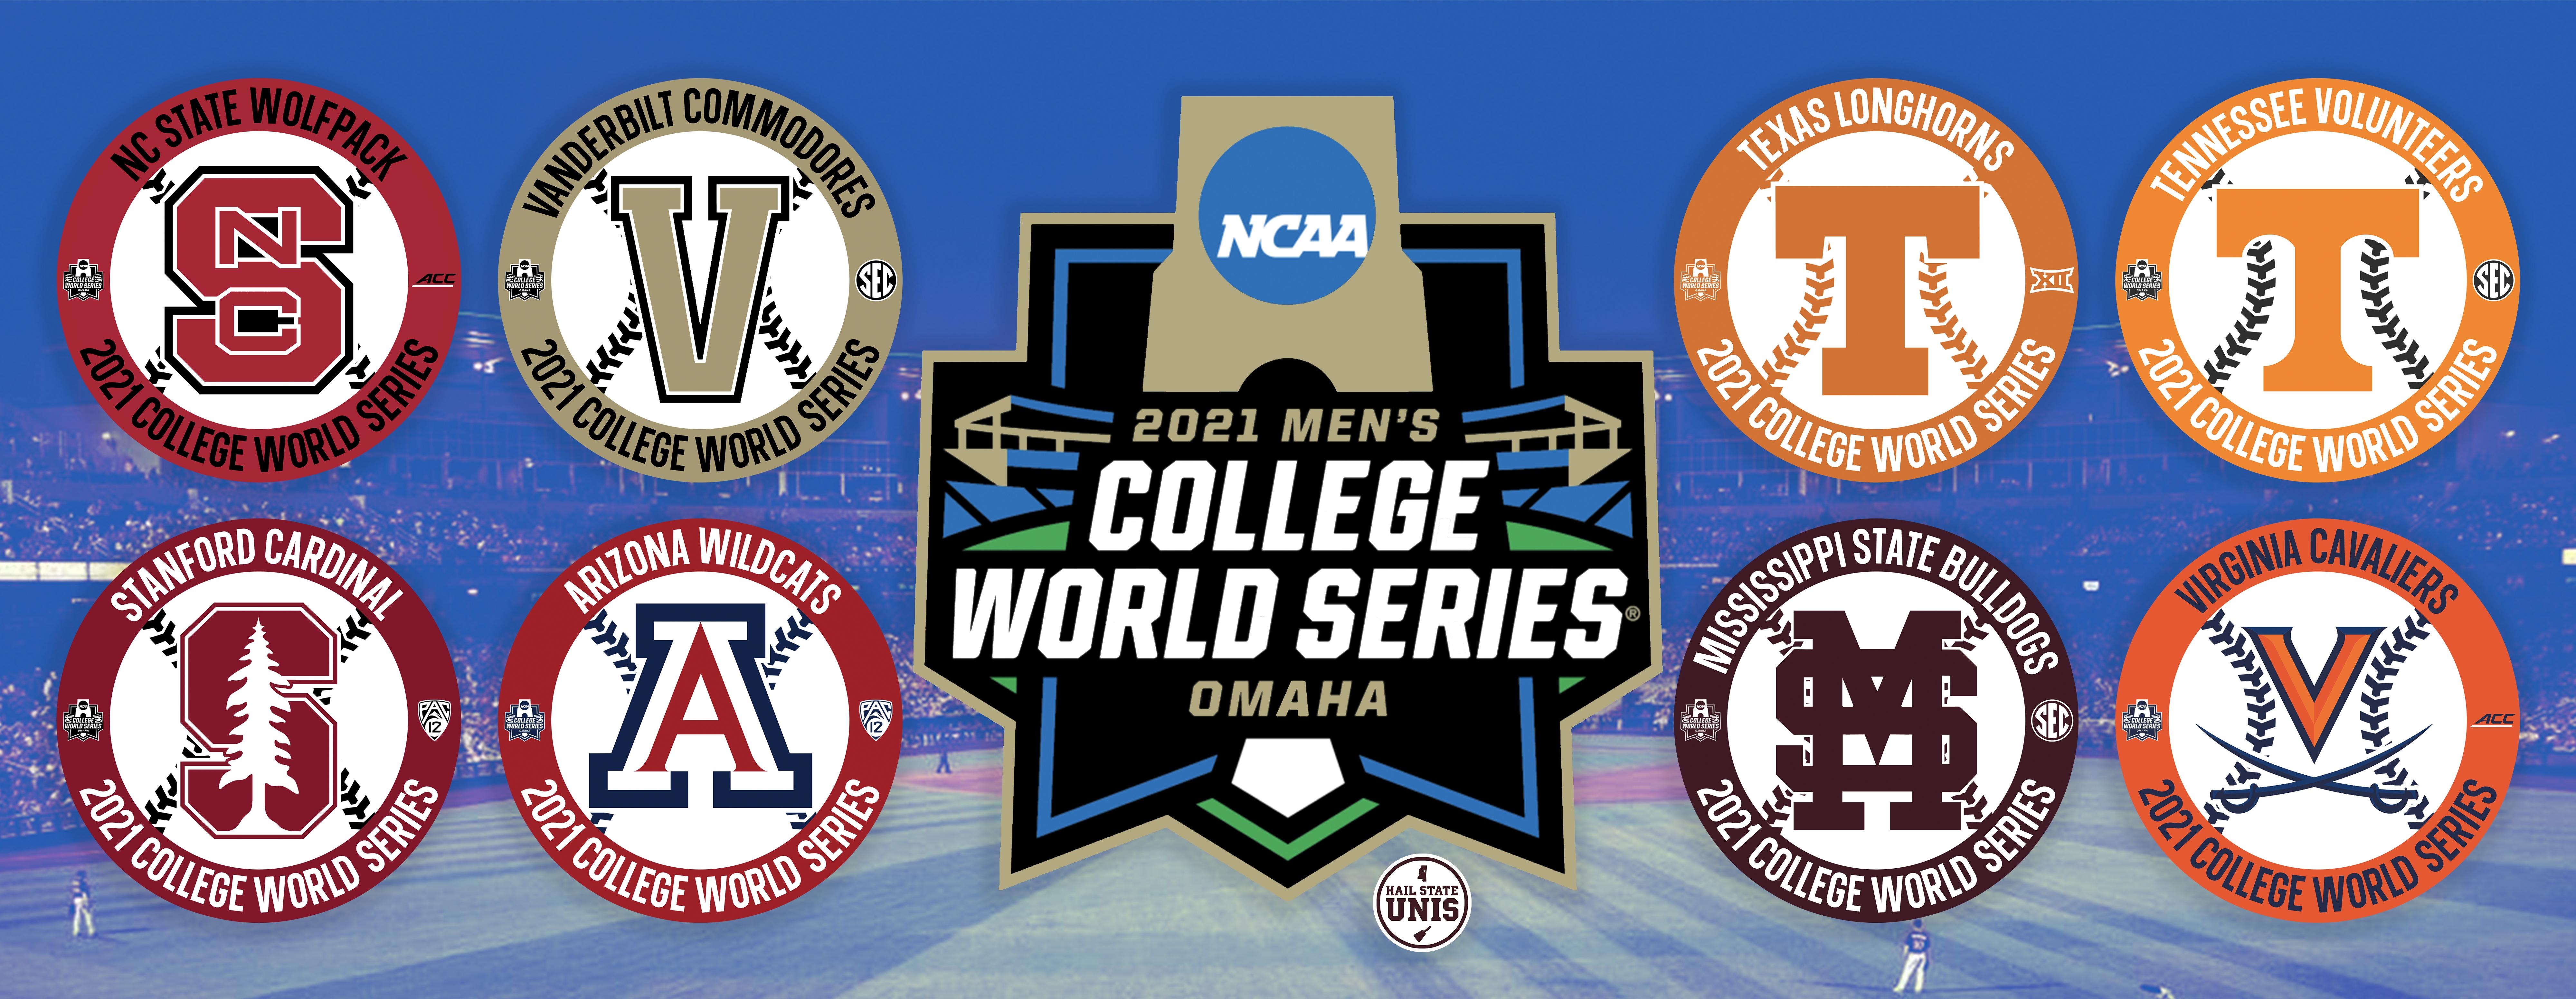 2021 Men's College World Series schedule